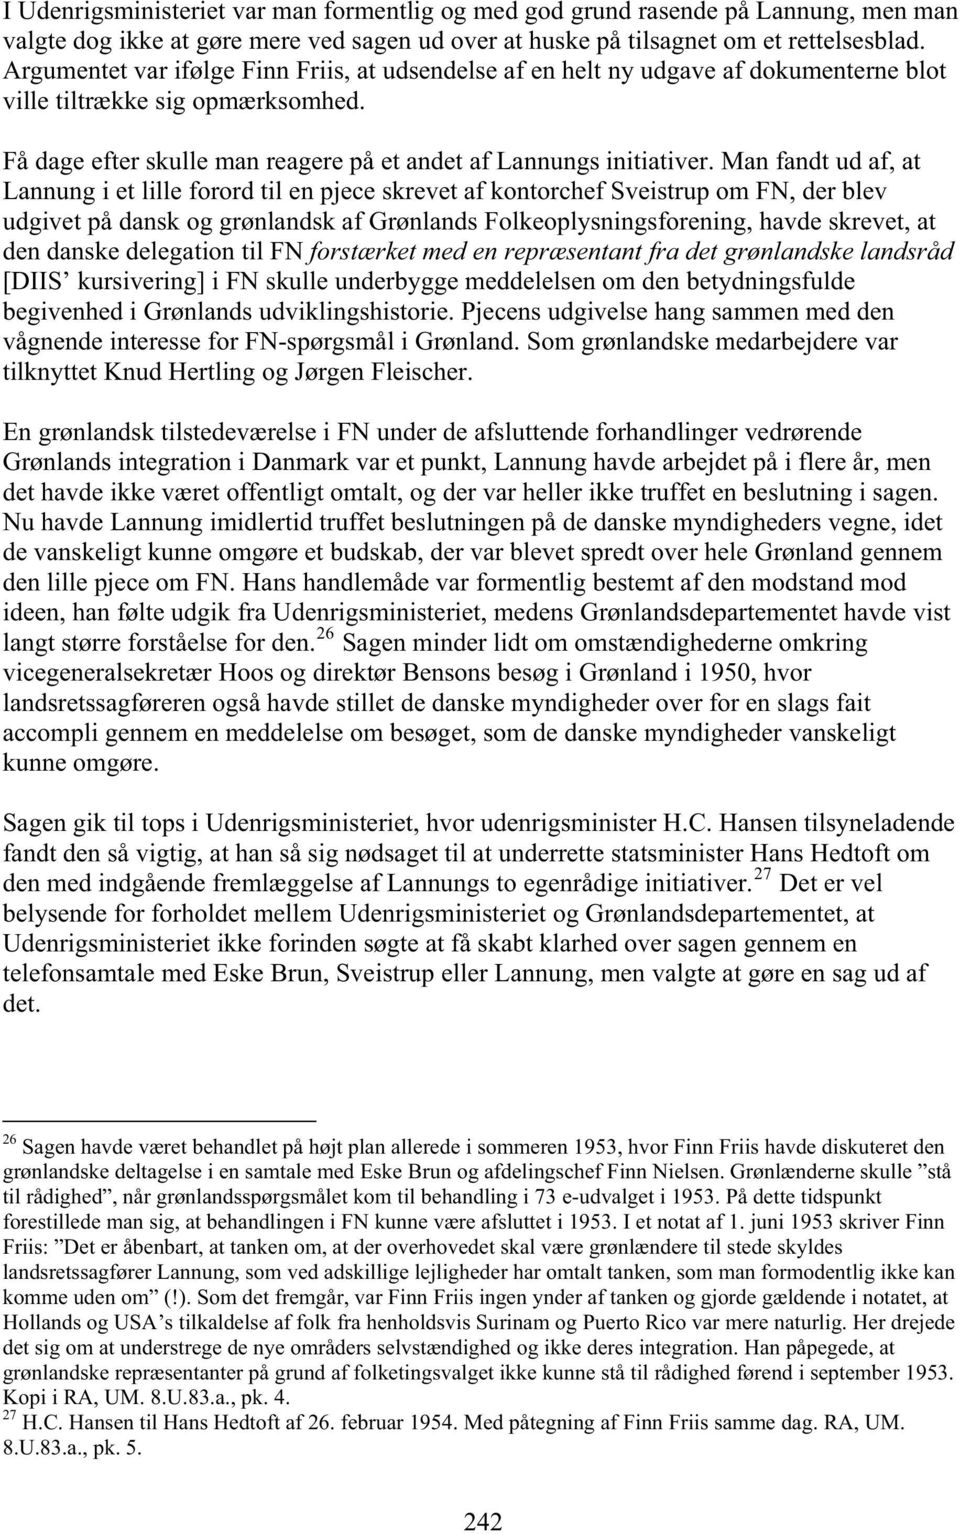 Man fandt ud af, at Lannung i et lille forord til en pjece skrevet af kontorchef Sveistrup om FN, der blev udgivet på dansk og grønlandsk af Grønlands Folkeoplysningsforening, havde skrevet, at den